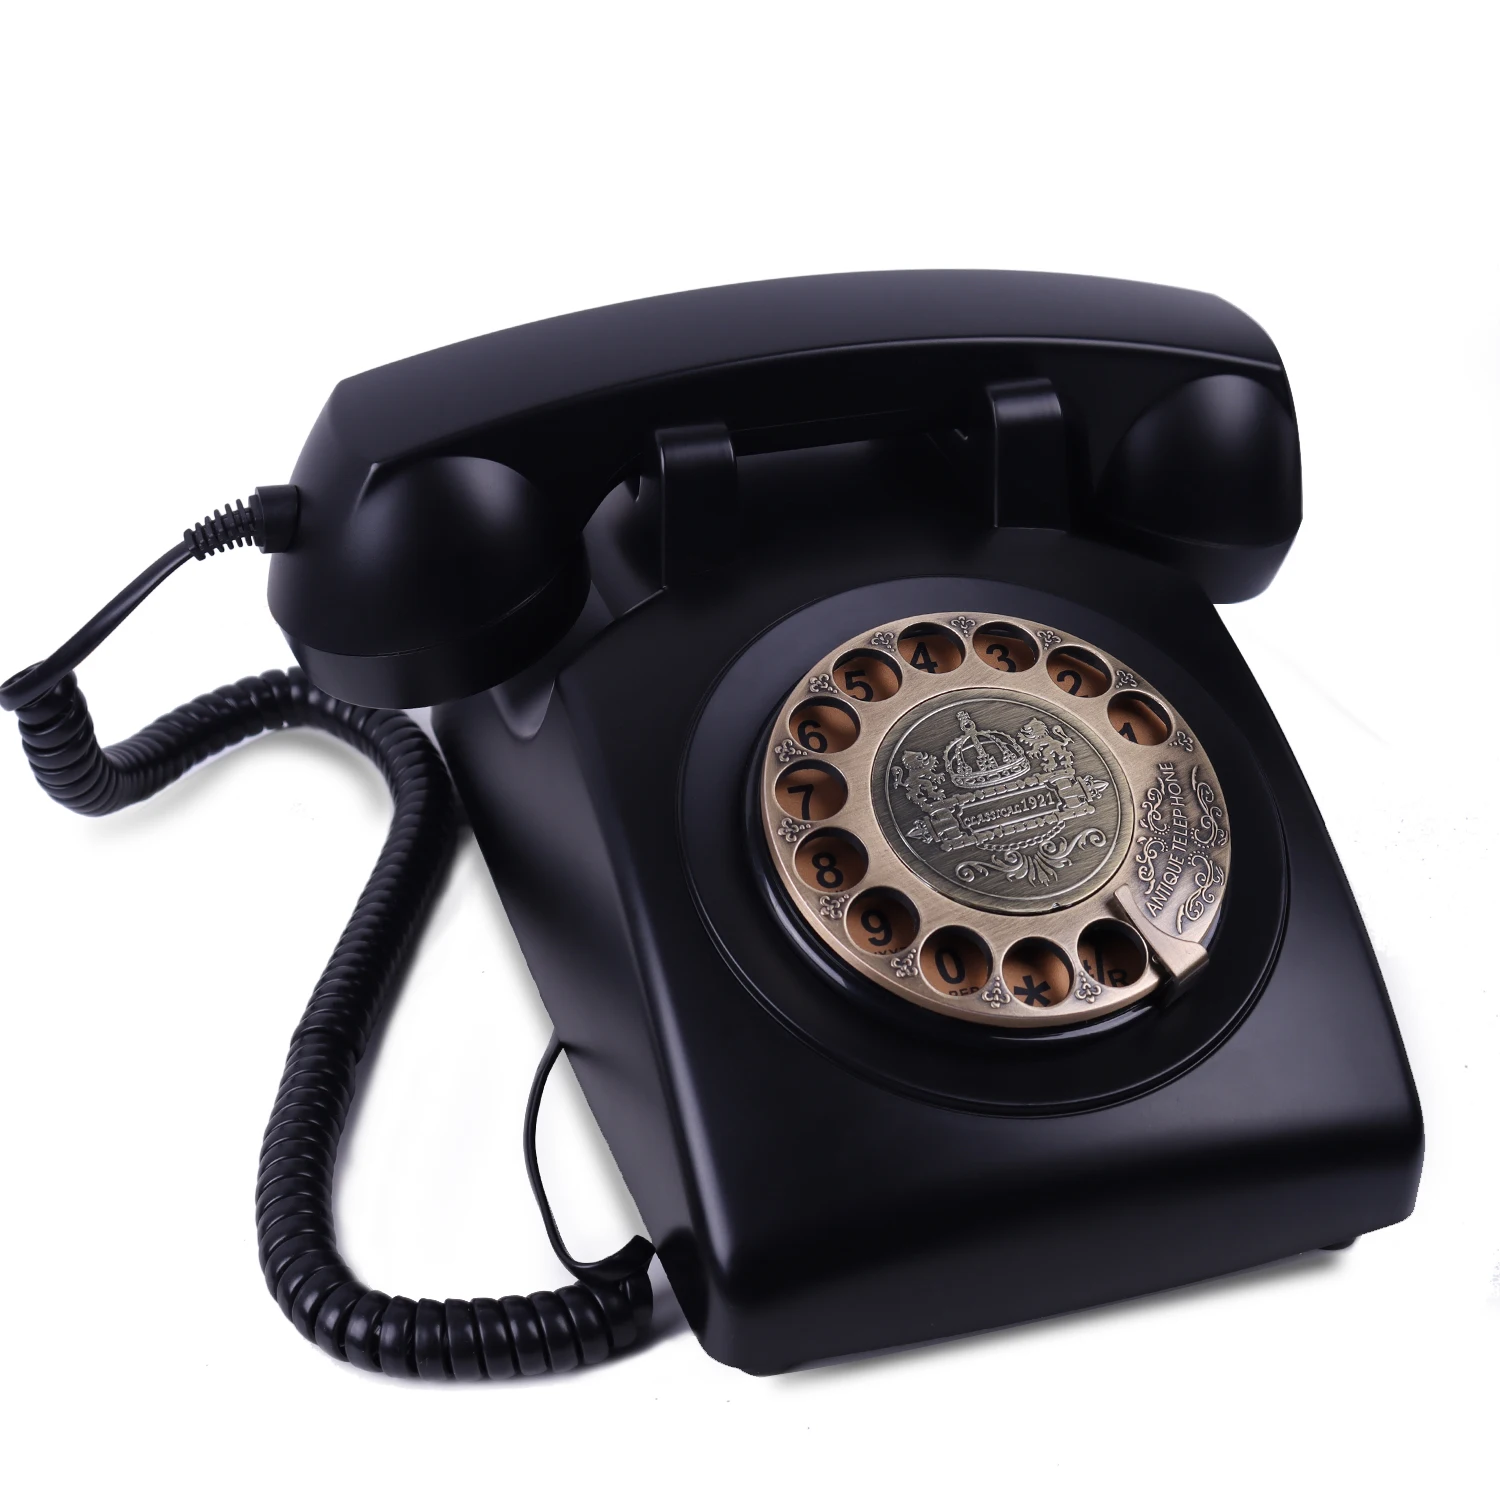 IAKEMIC Retro Rotary Dial Home Handys, Altmodische Klassische Corded Festnetz Telefon Vintage Telefon für Heim und Büro